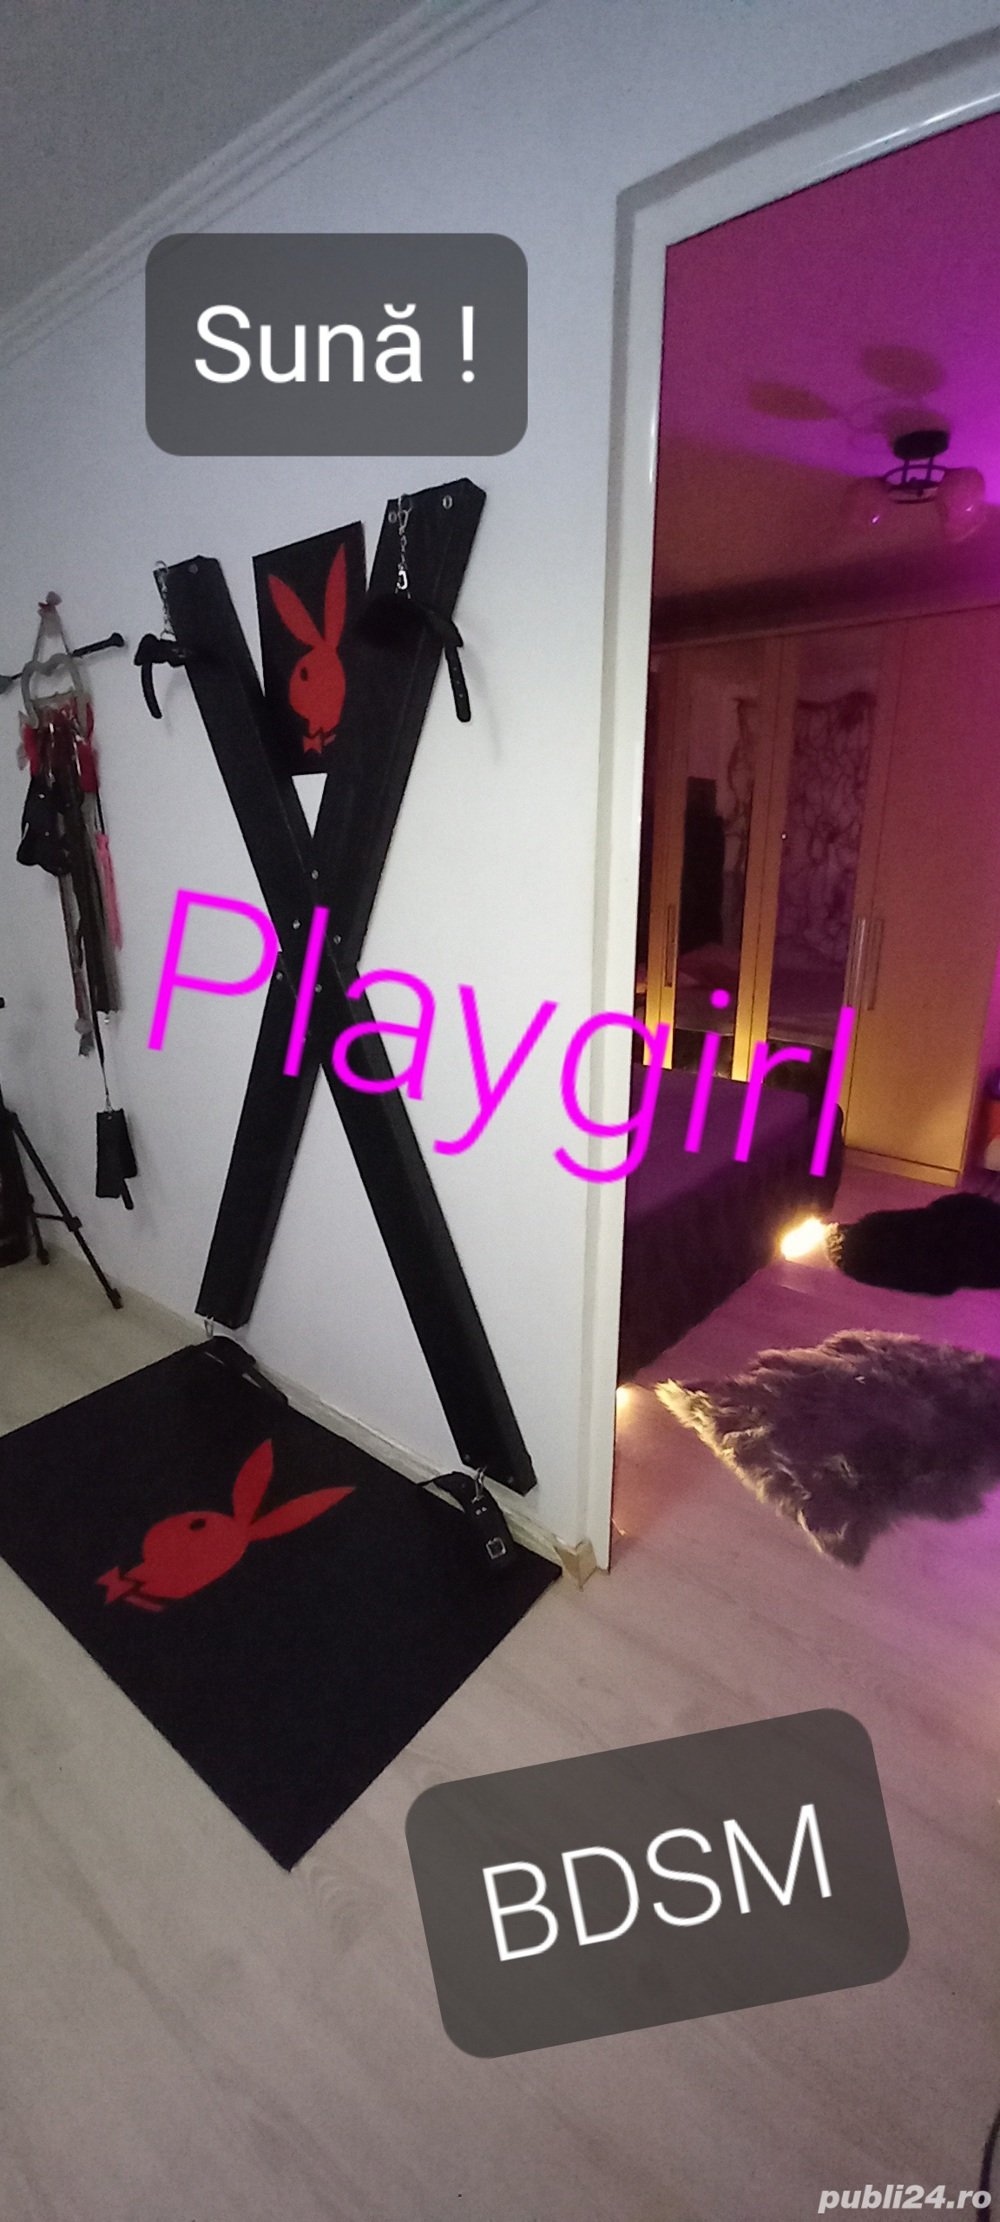 Playgirl te așteaptă...  - imagine 2